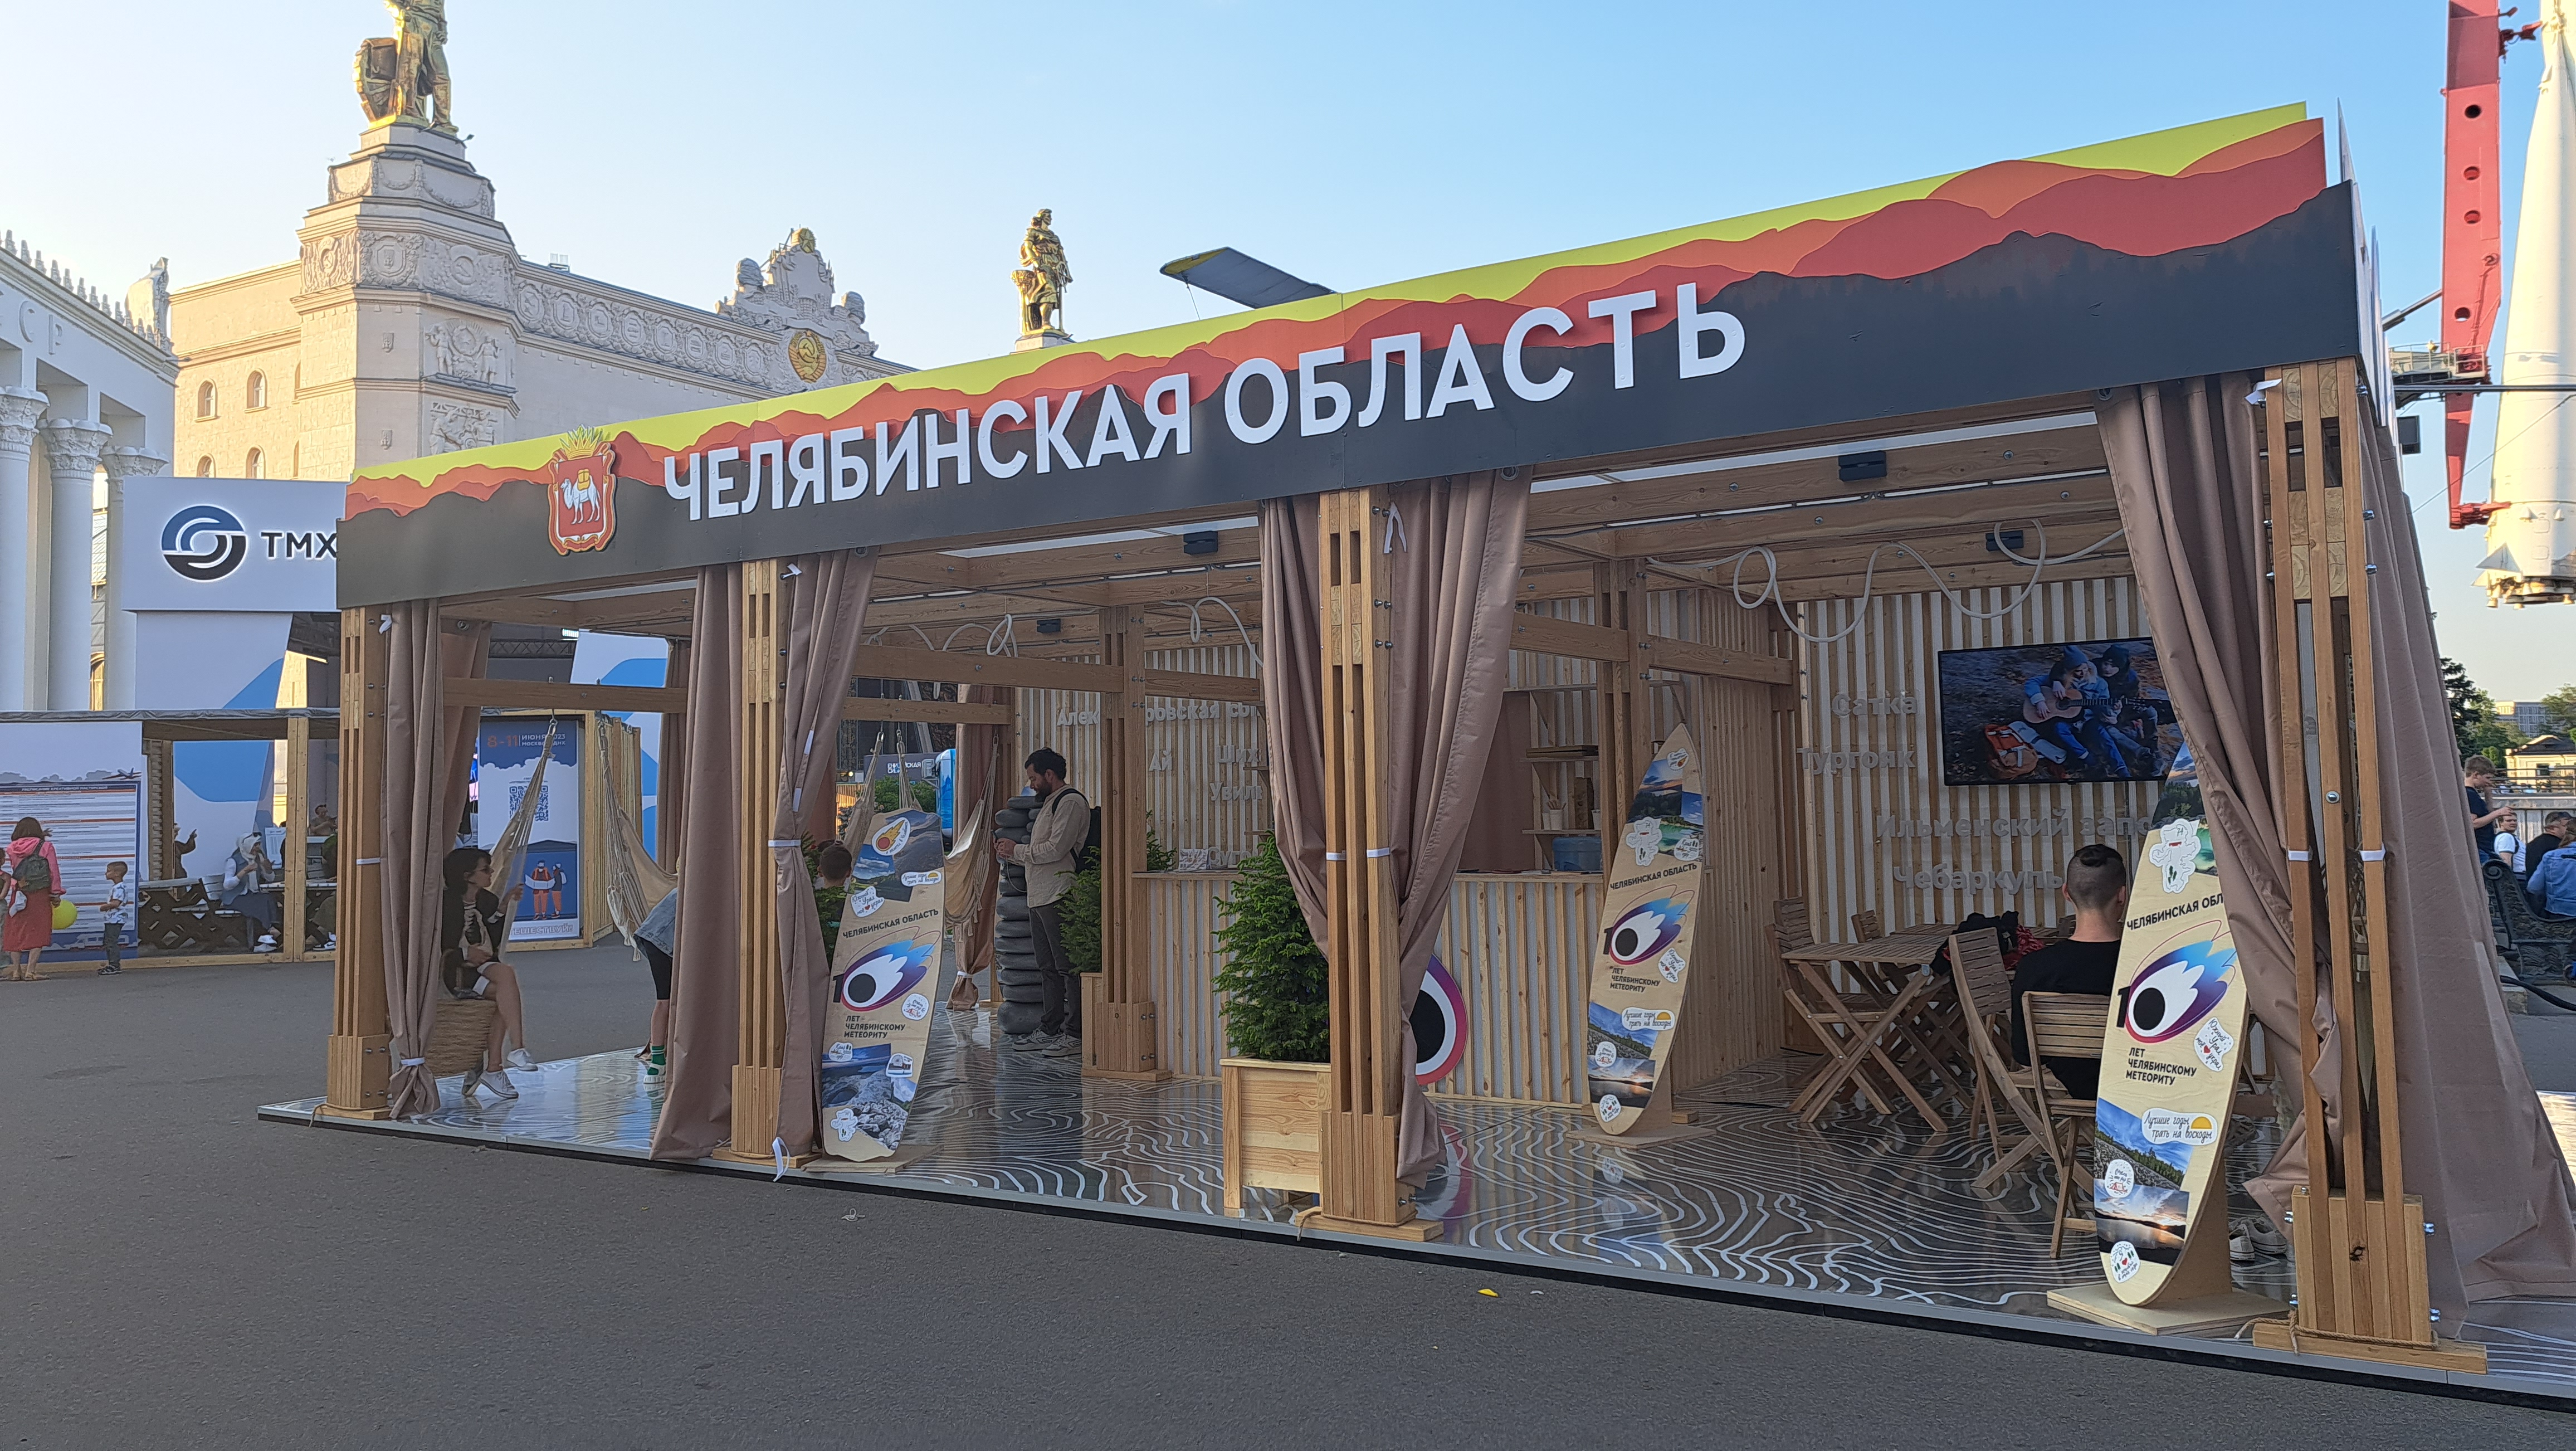 Челябинская область на туристическом форуме "Путешествуй!"